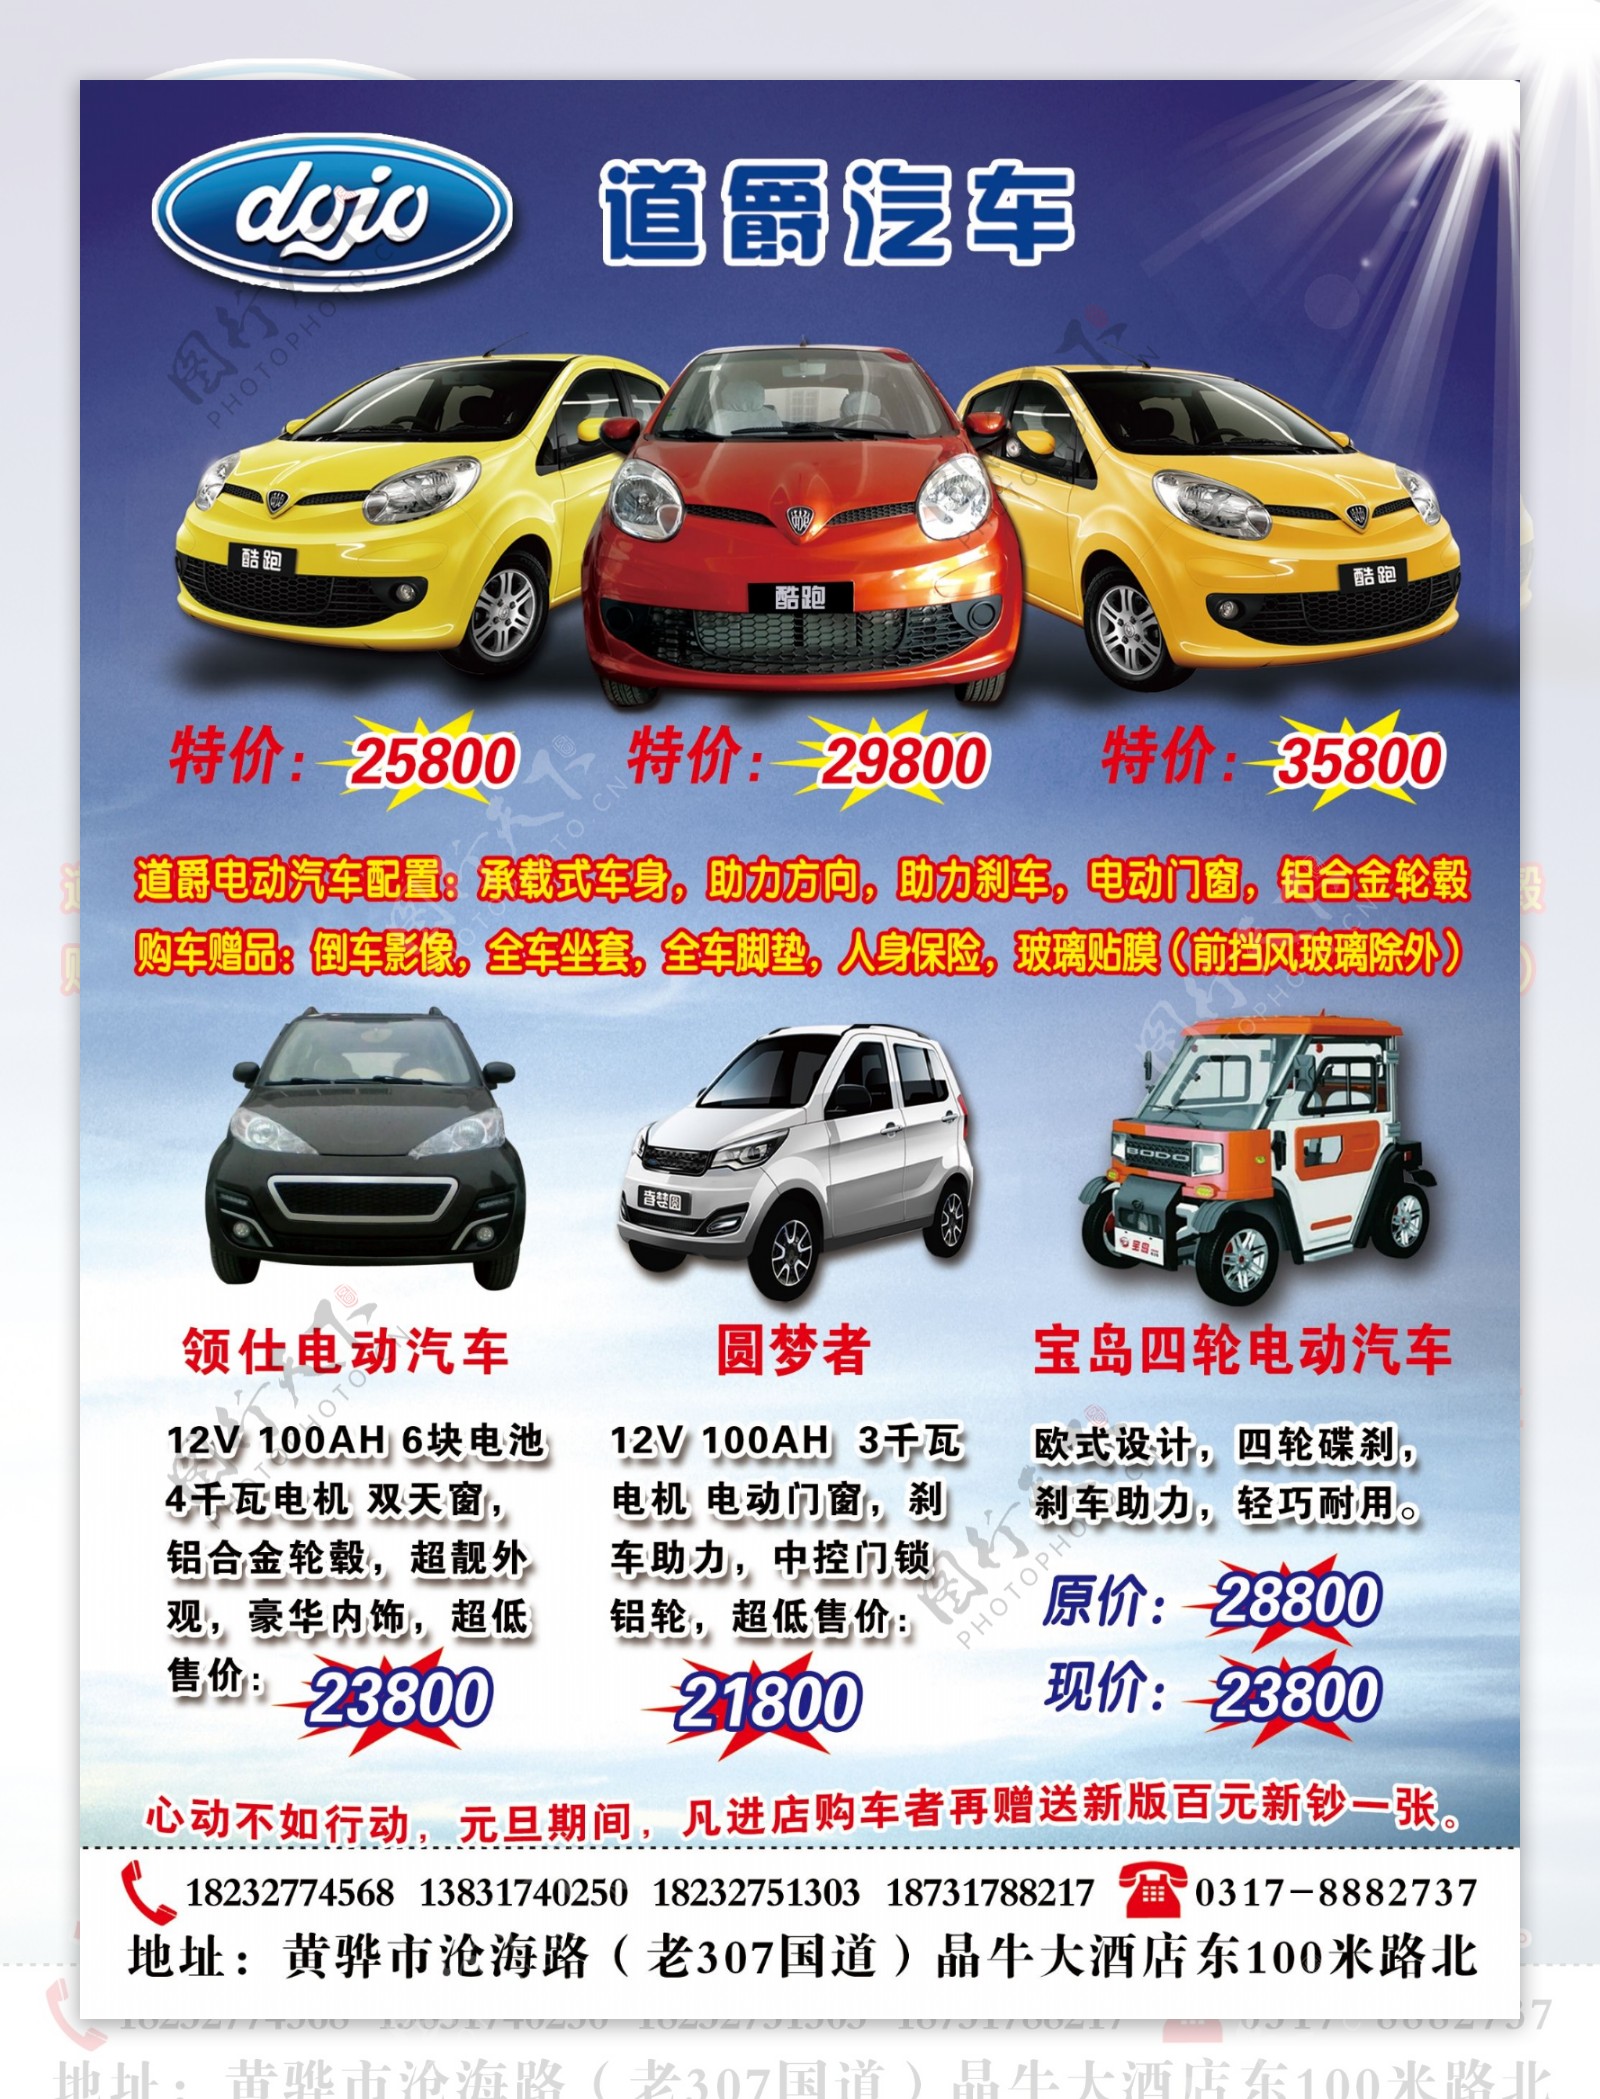 奇瑞电动汽车5周年庆典彩页宣传海报展板